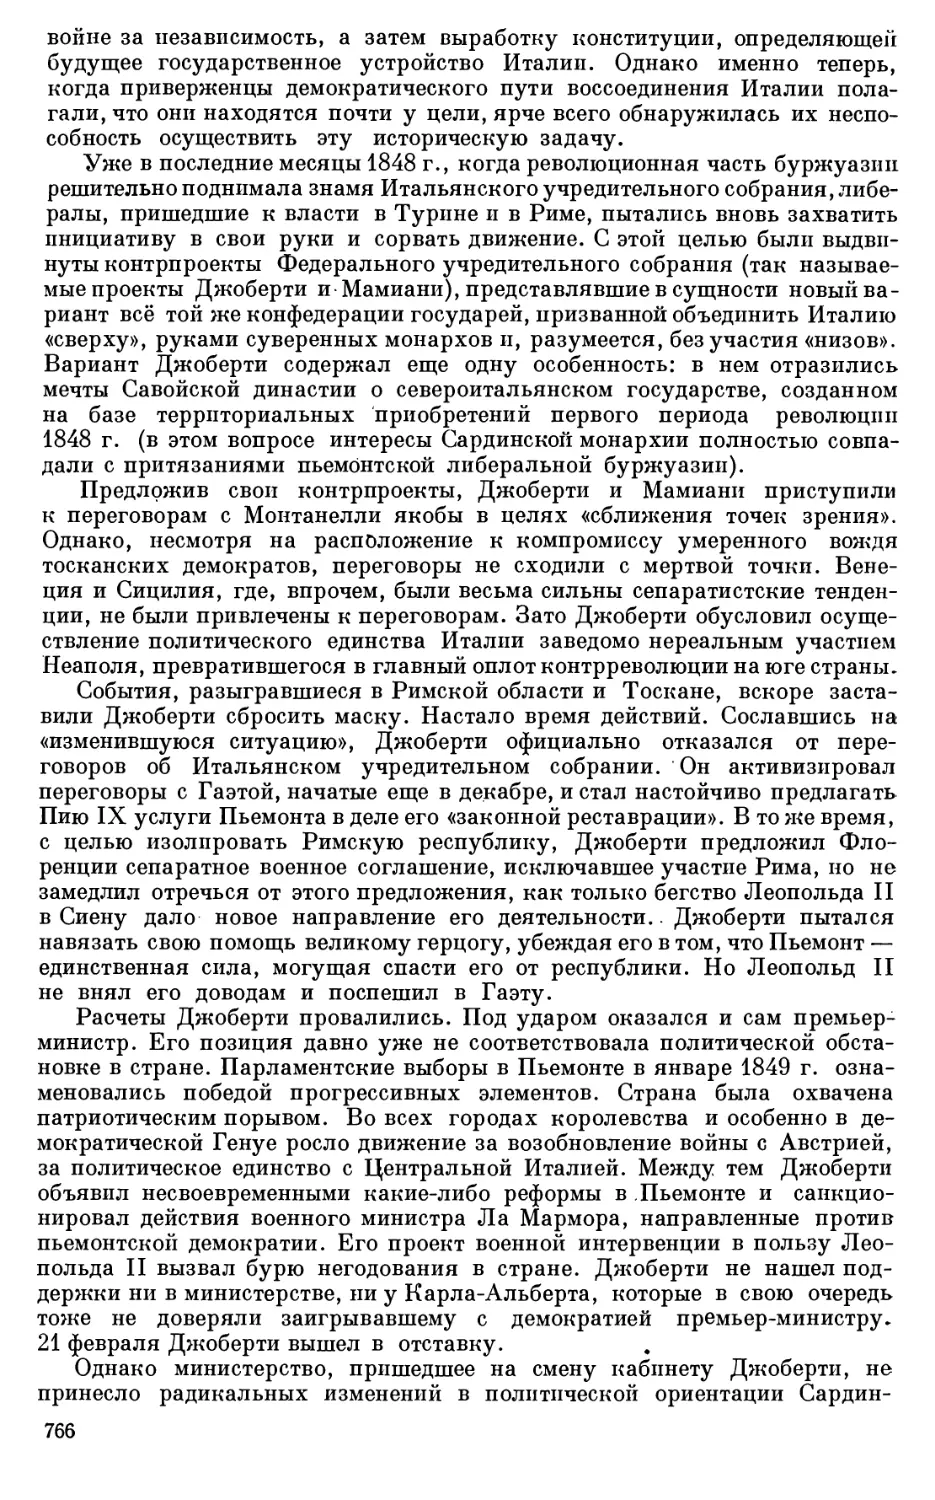 Борьба Маркса и Энгельса с контрреволюционными силами в 1849 г.